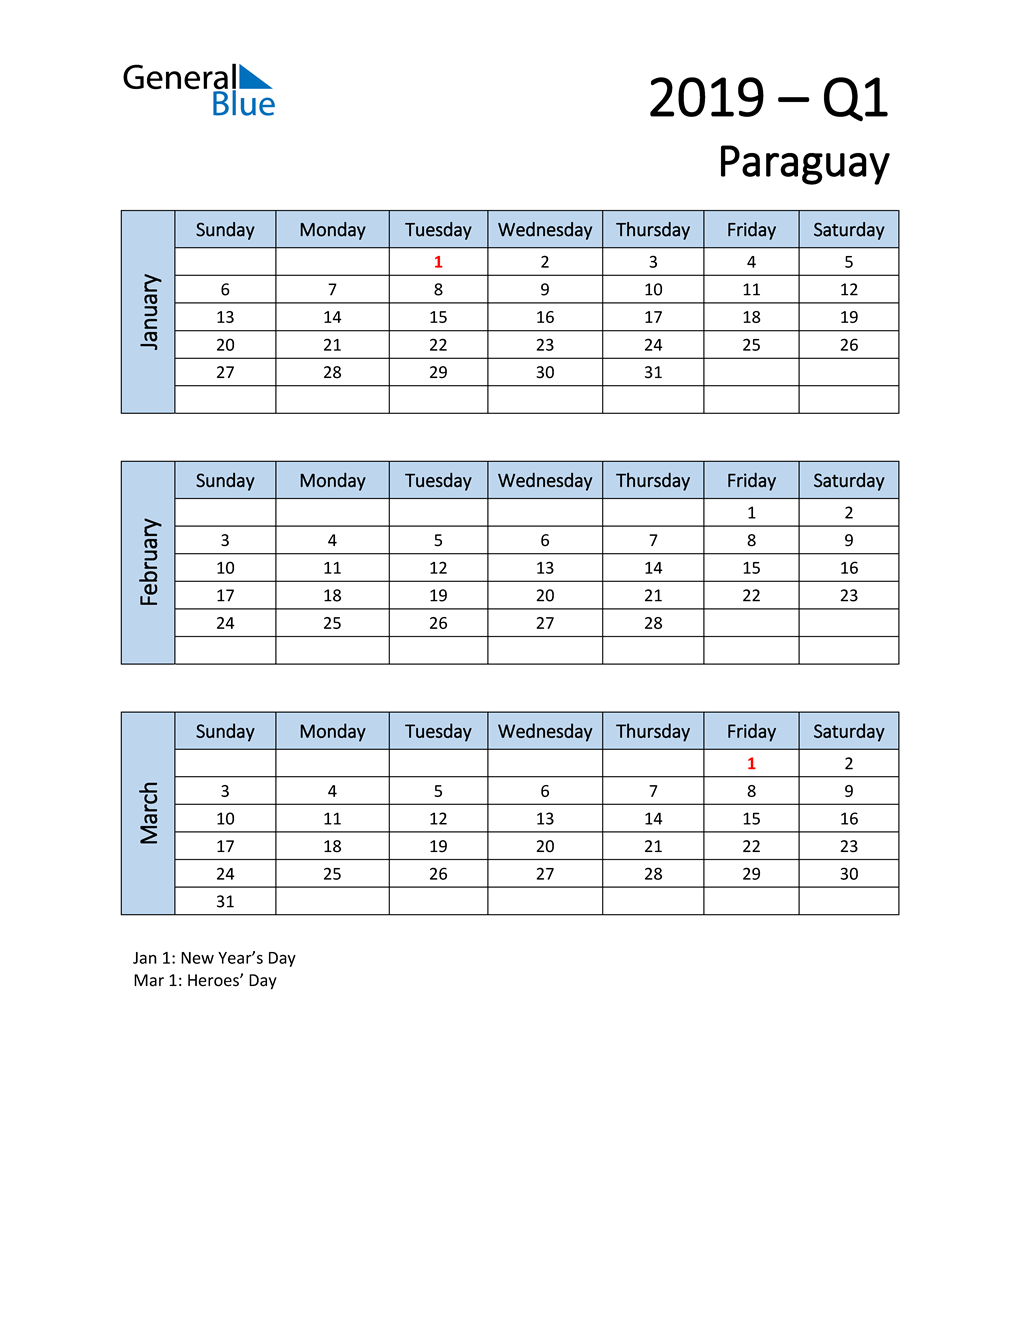  Free Q1 2019 Calendar for Paraguay